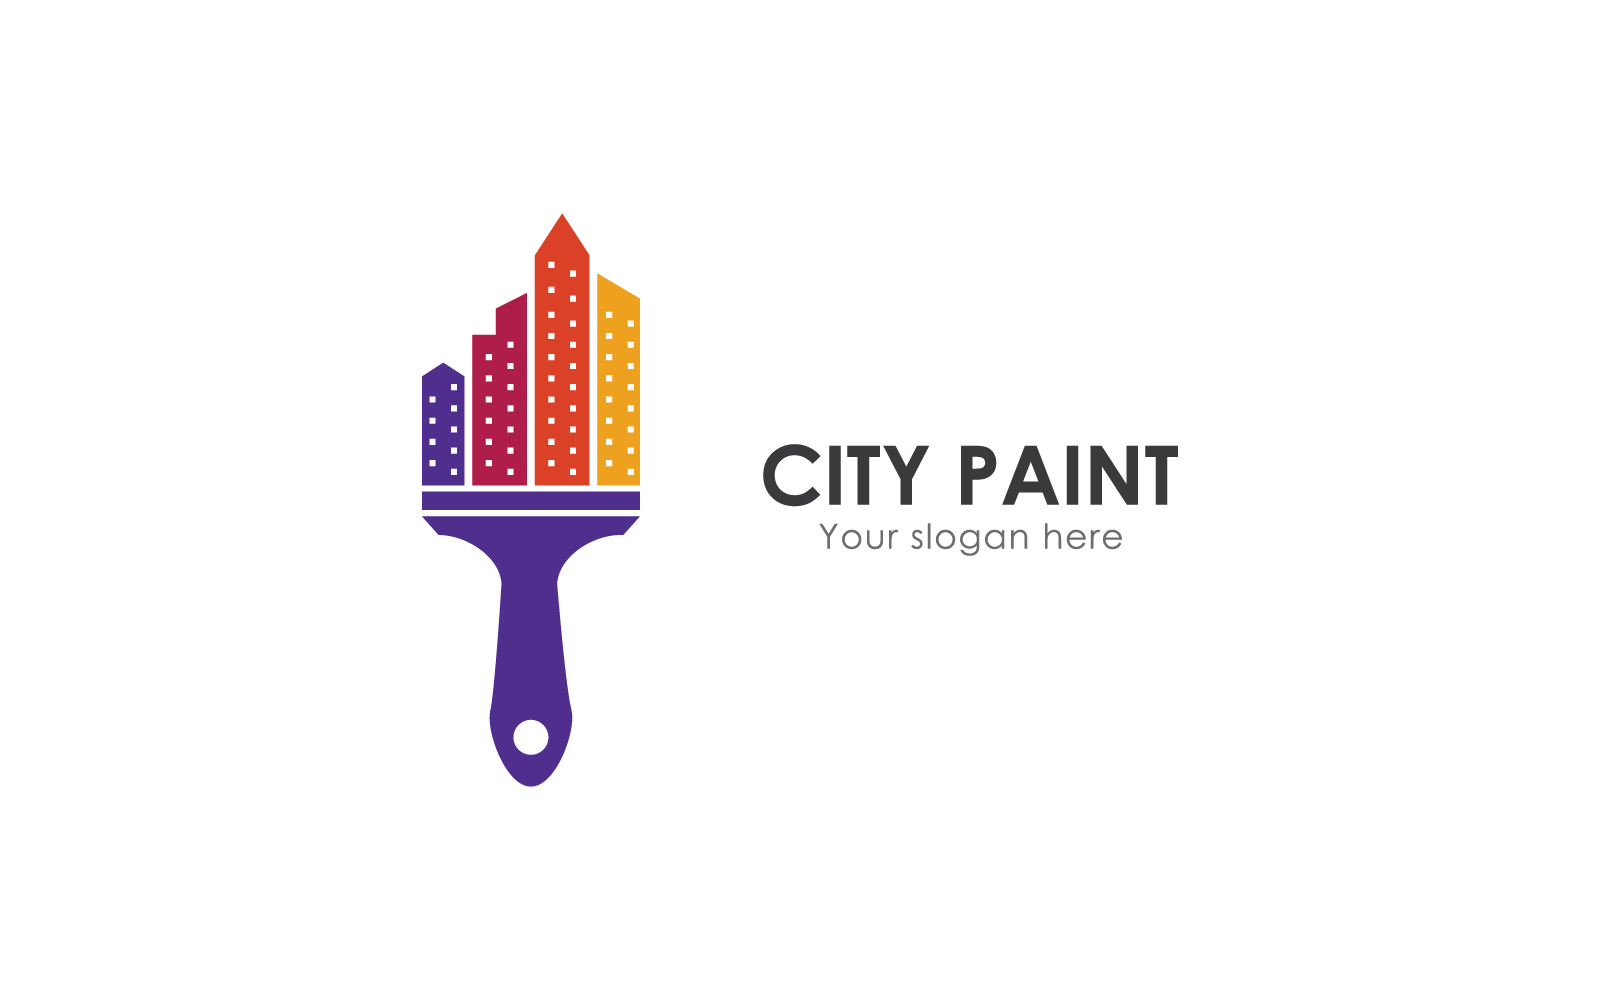 Modèle vectoriel d'affaires de logo de peinture de ville